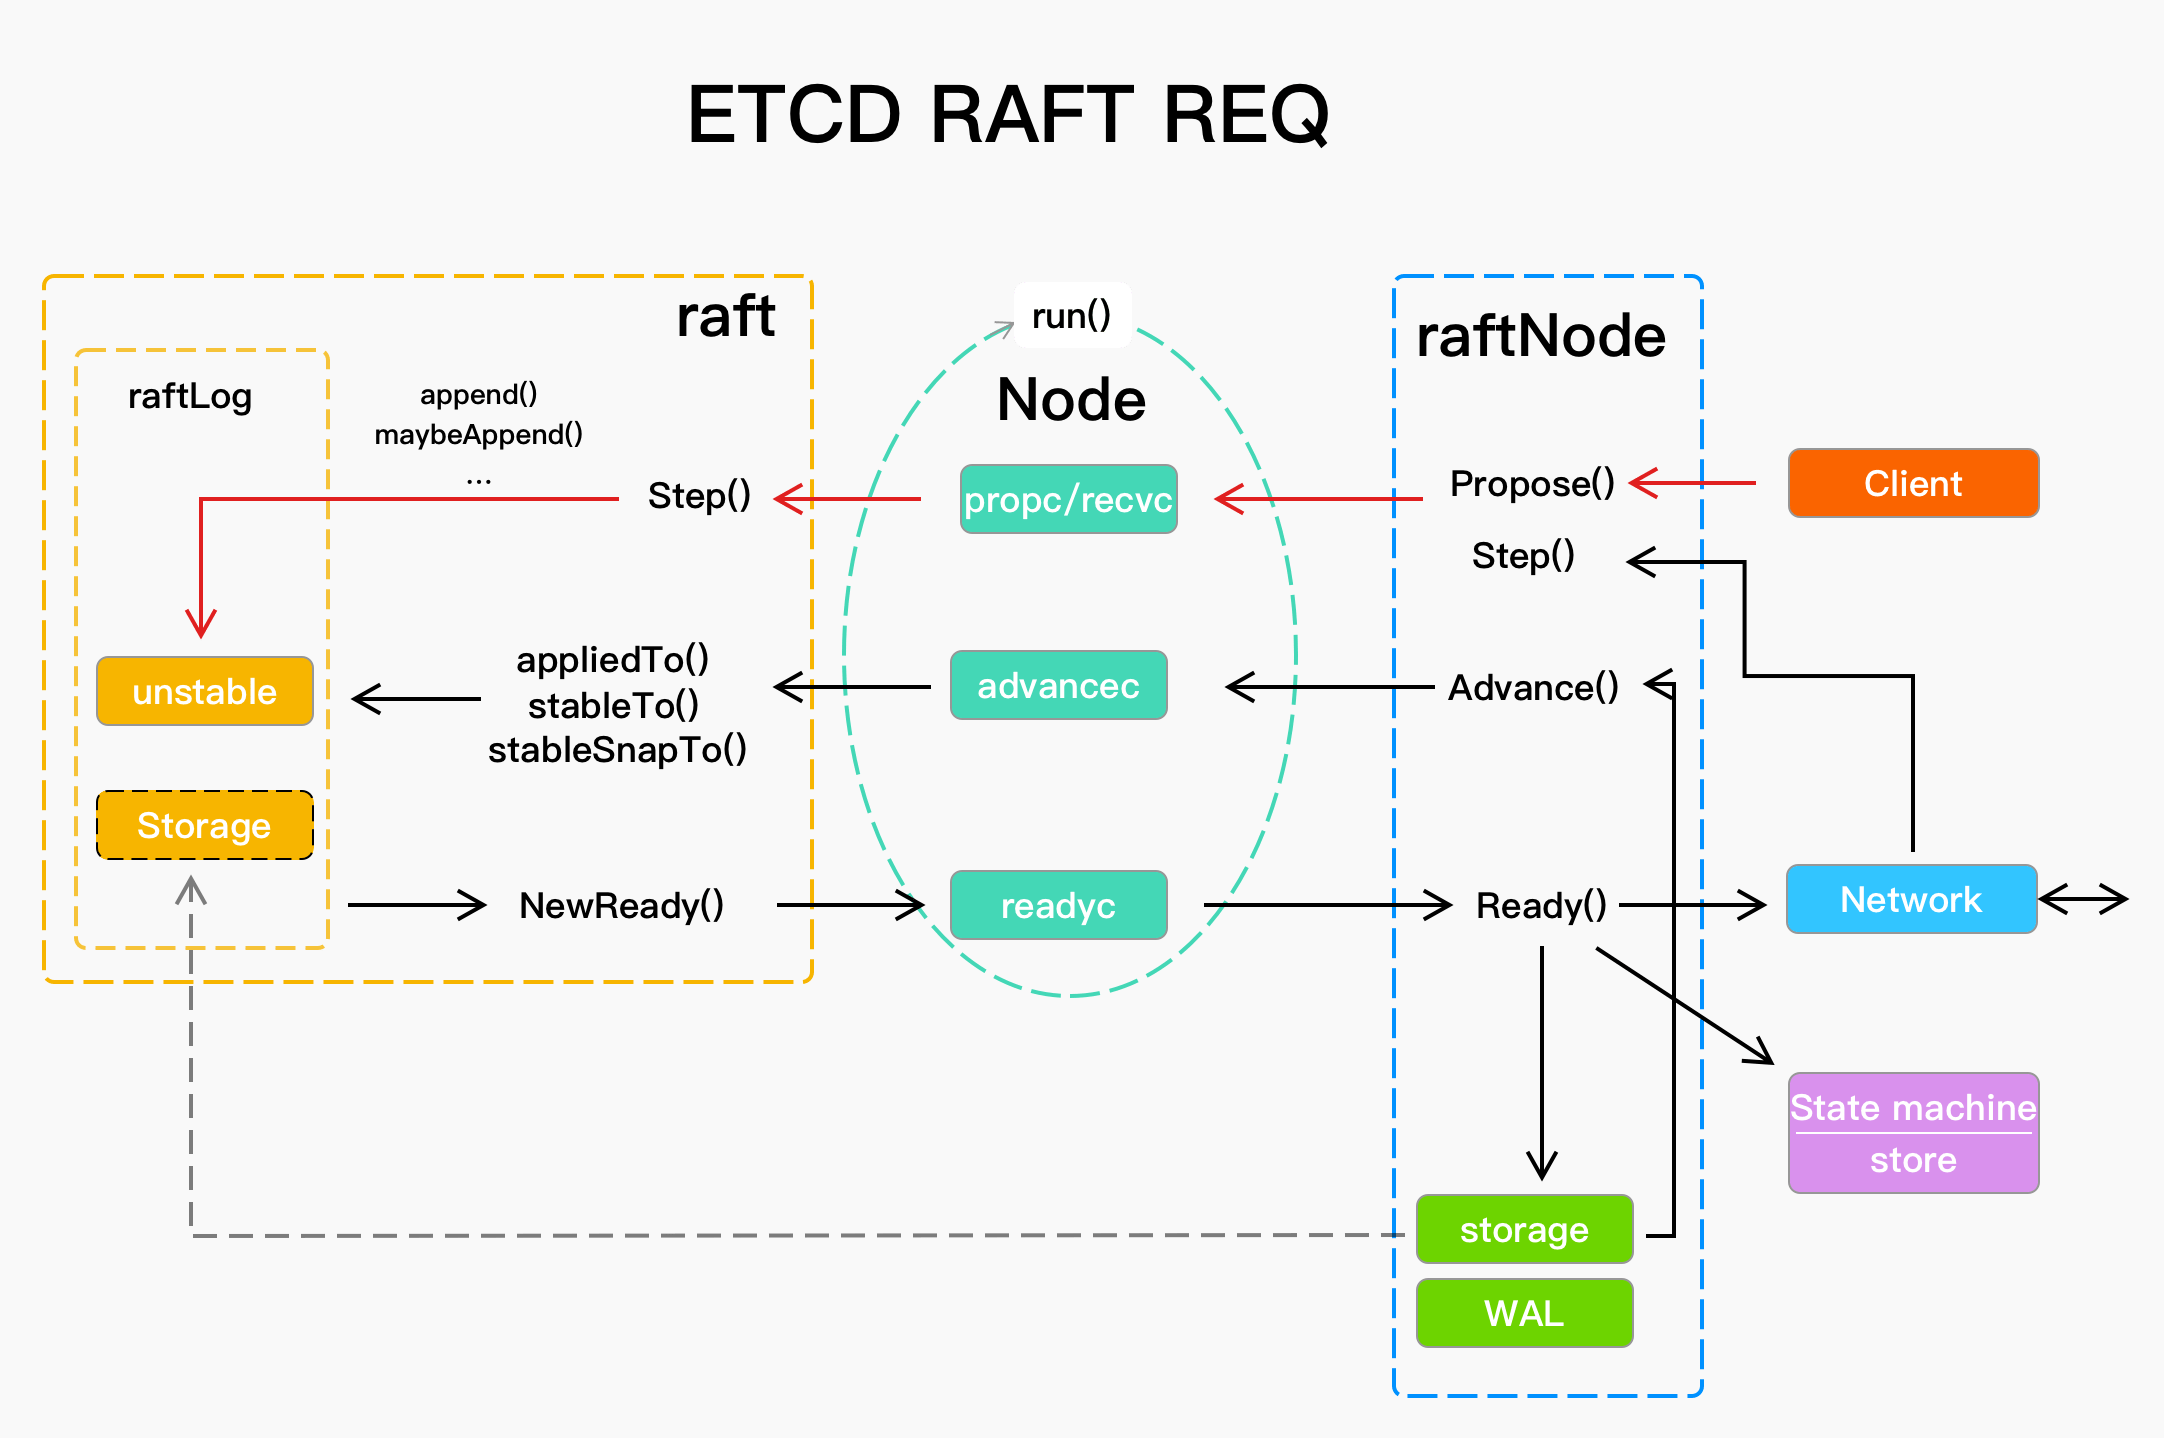 etcd raft request flow